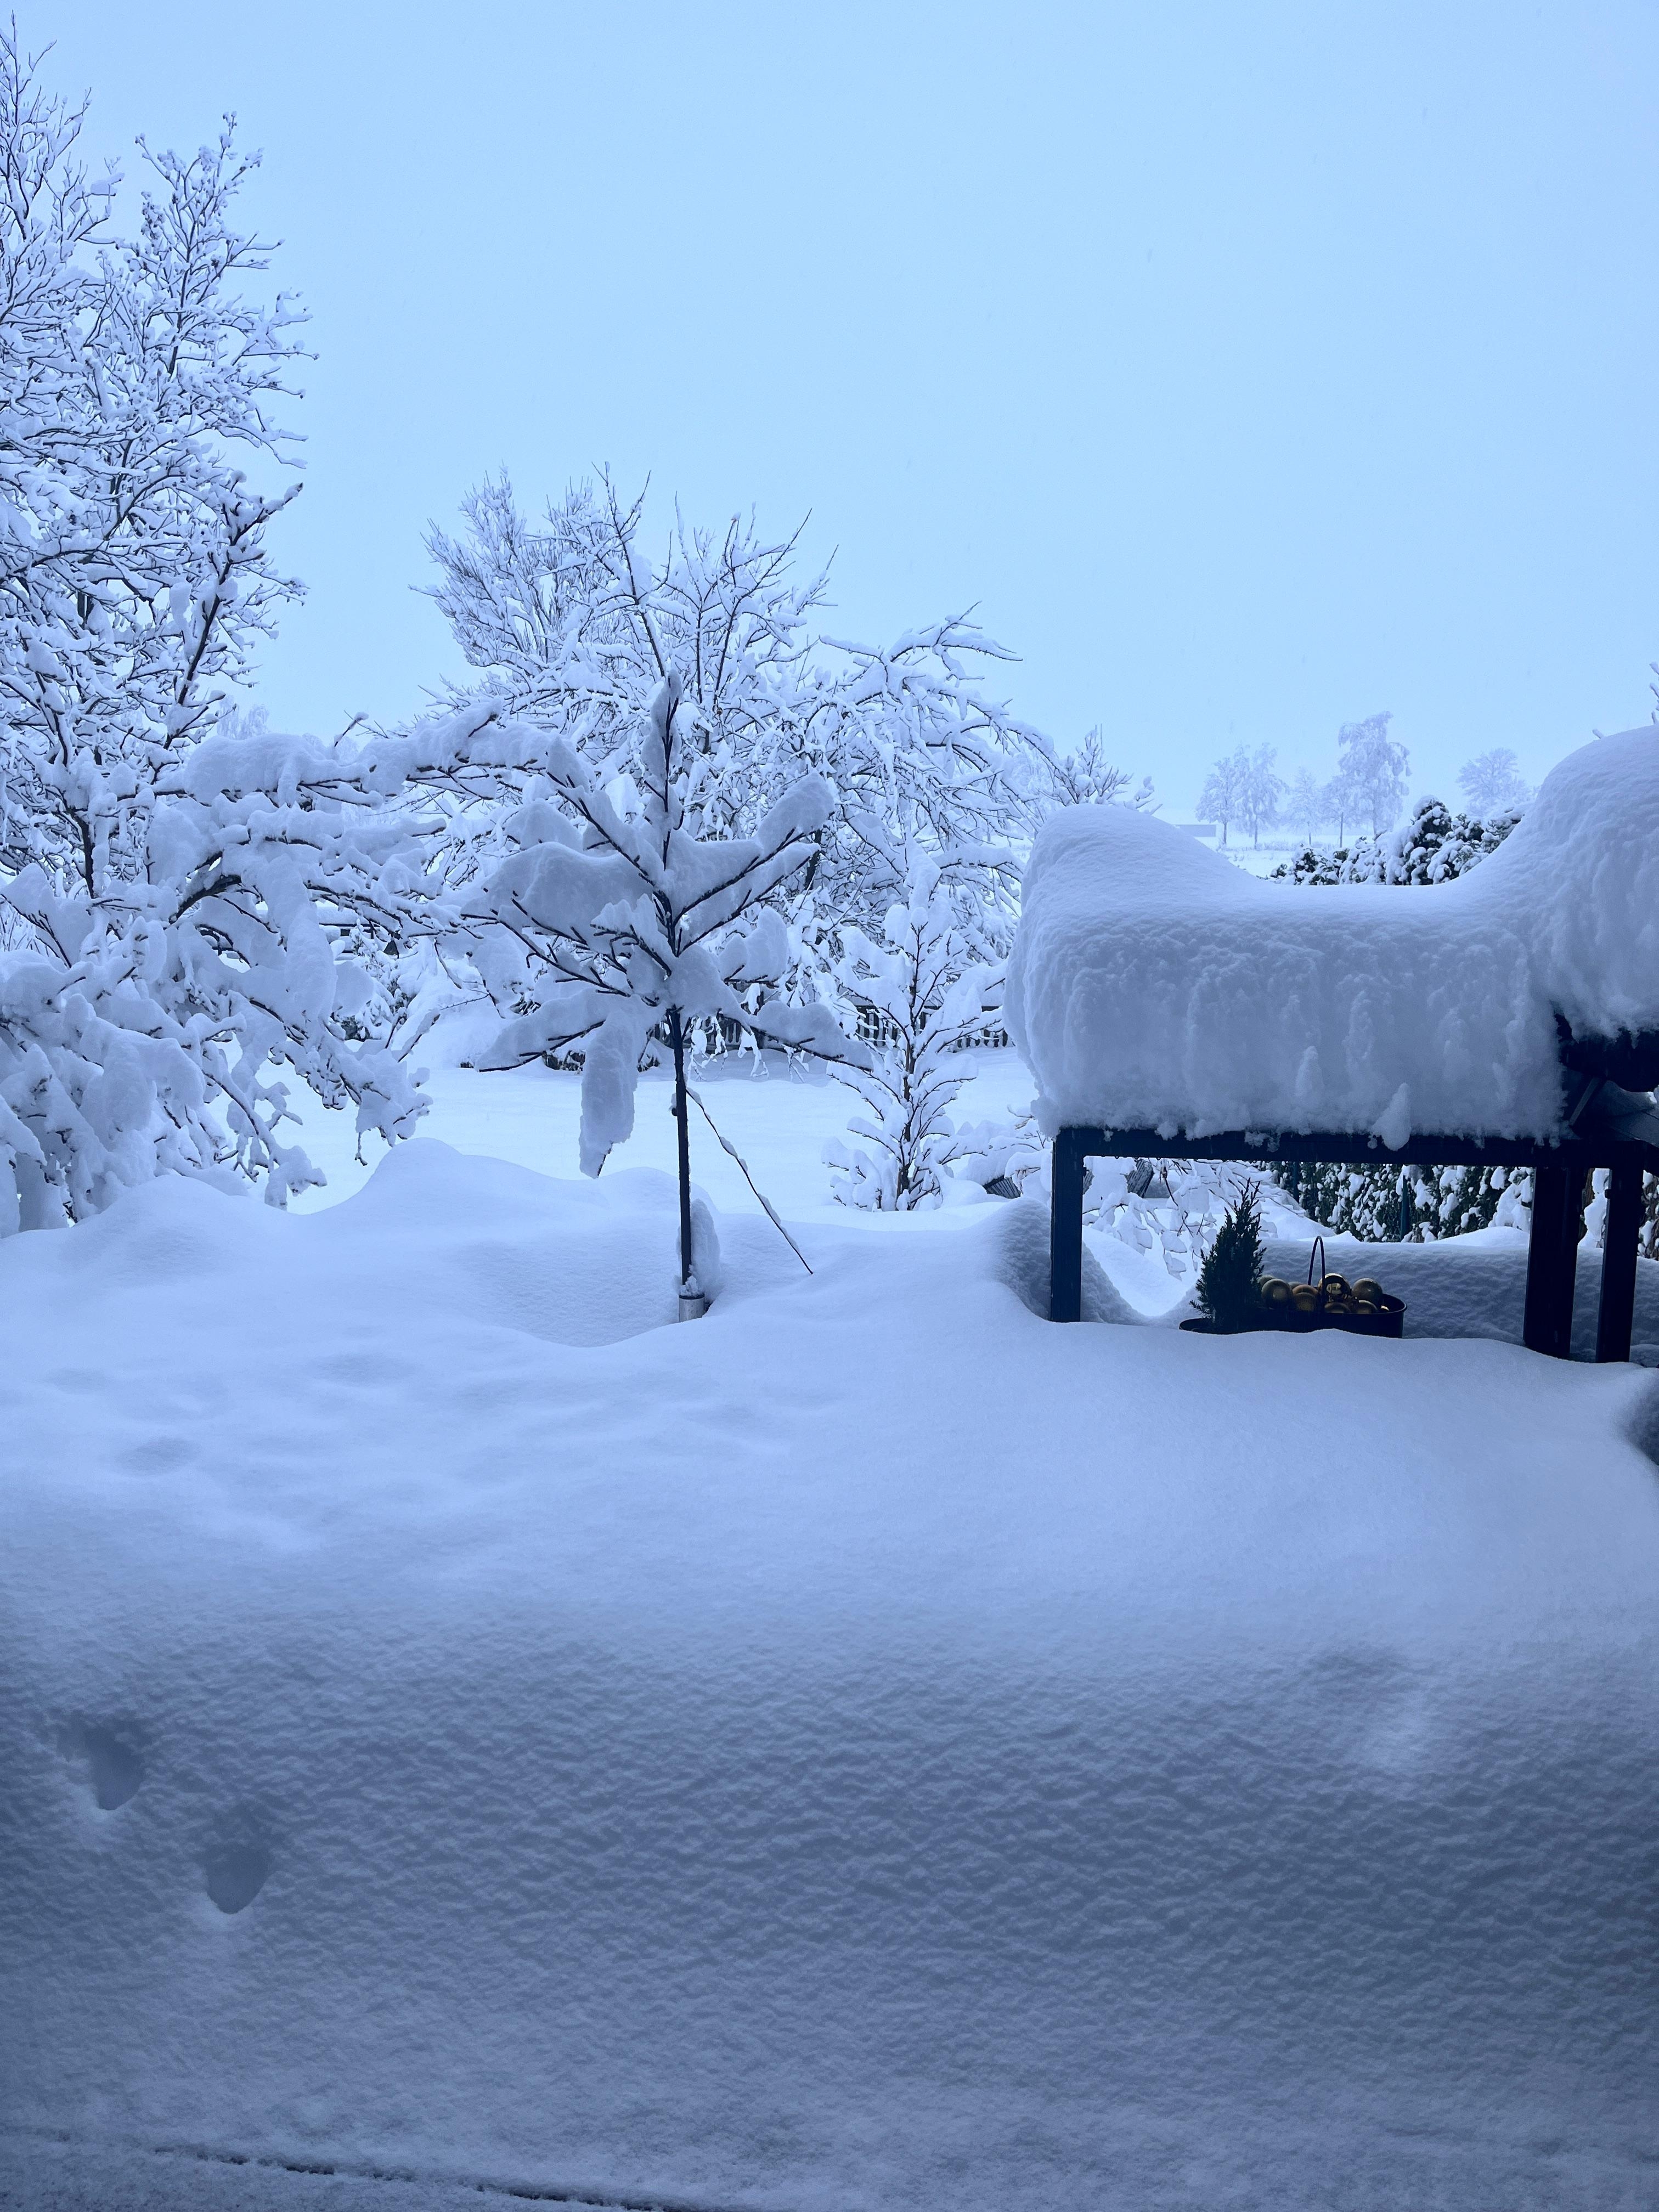 Es waren einmal eine Terrassen & ein Garten ❄️
#schnee#wintereinbruch#winterwonderland#letitsnow#schneechaos#eingeschneit#outdoorkitchen#winter